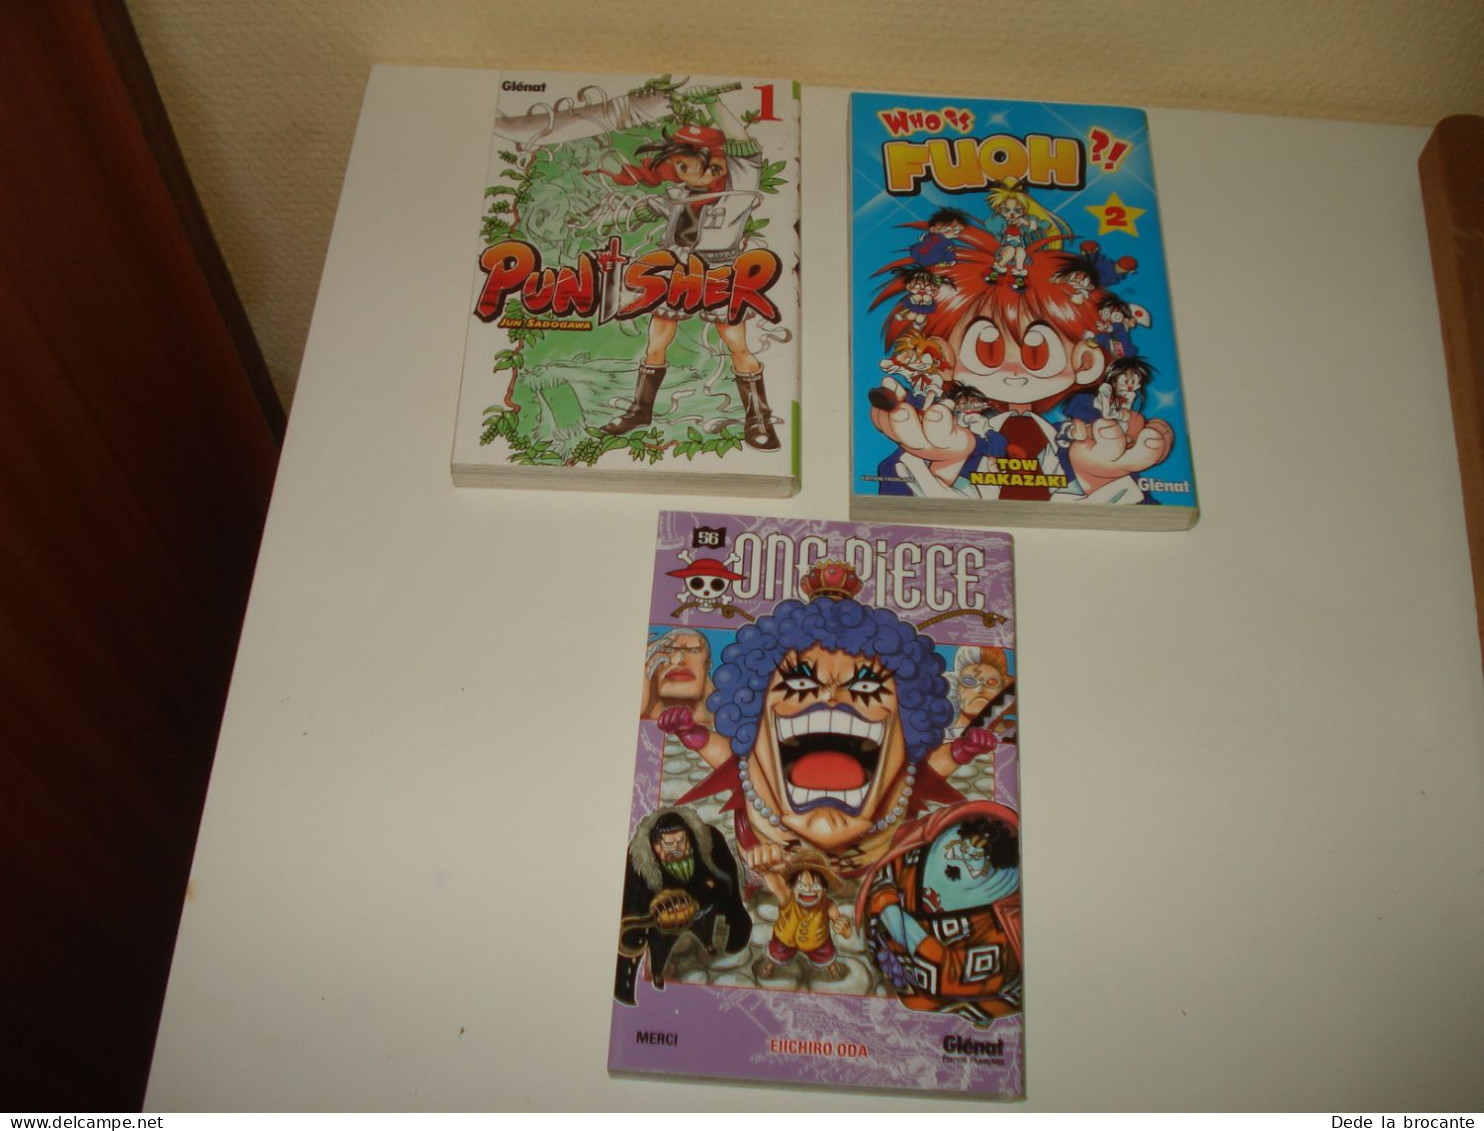 C56 (18) / Lot 3 Mangas NEUF -  One Piece - Who Is Fuho - Punisher - Mangas (FR)